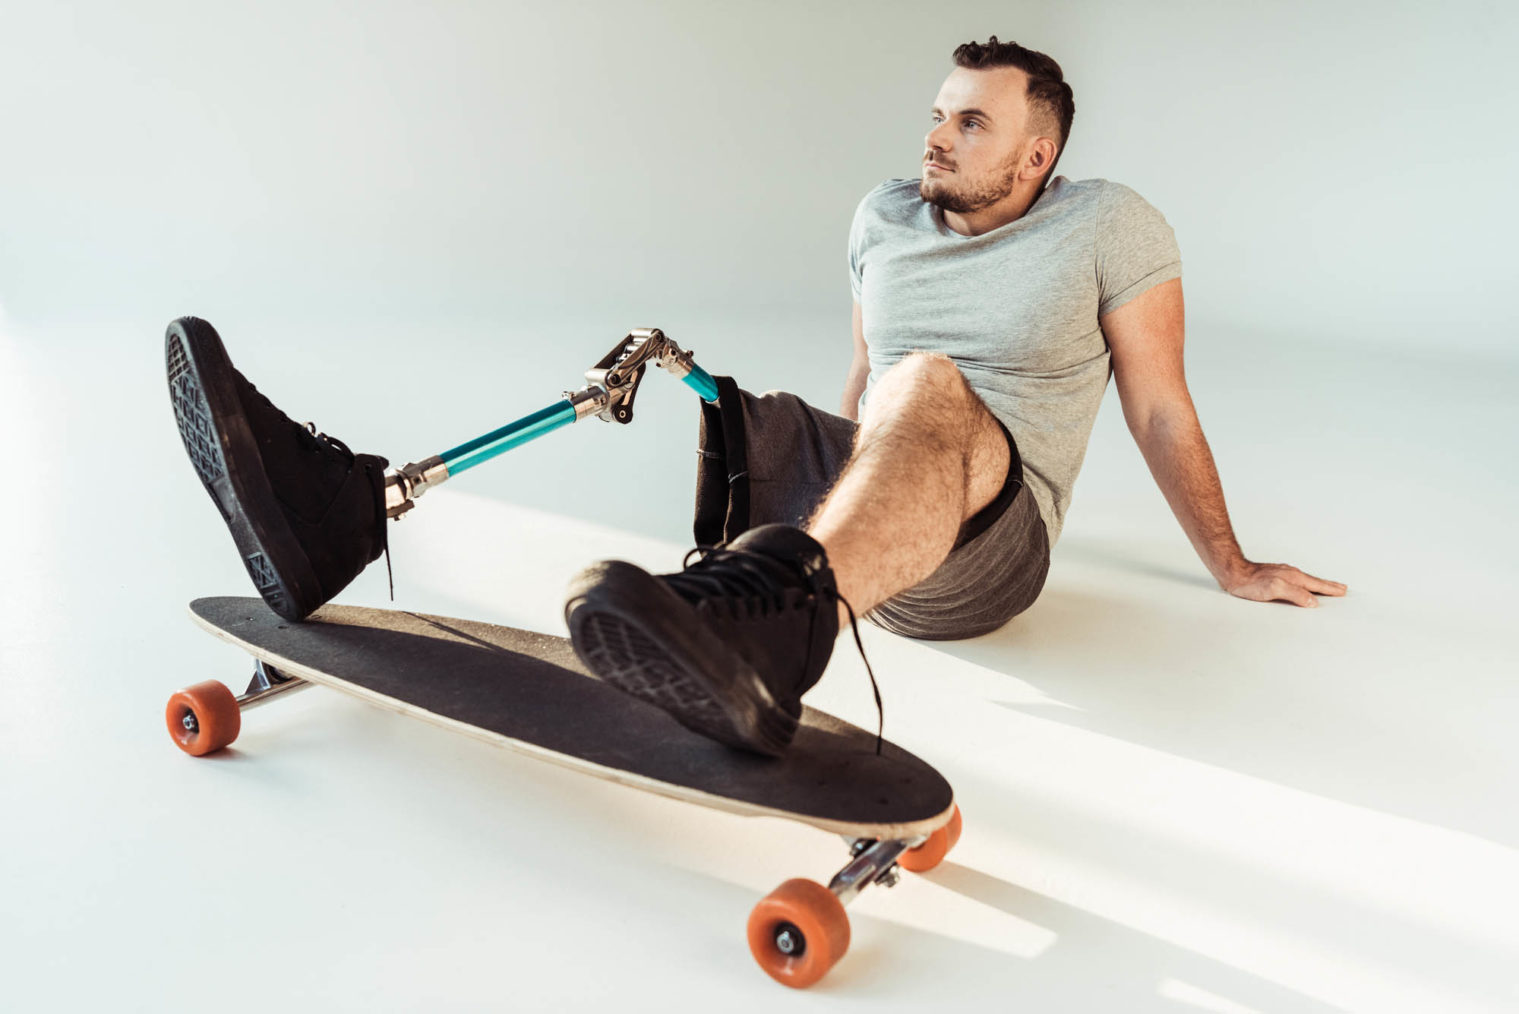 Ung mann med beinprotese og skateboard sitter avslappet på bakken.